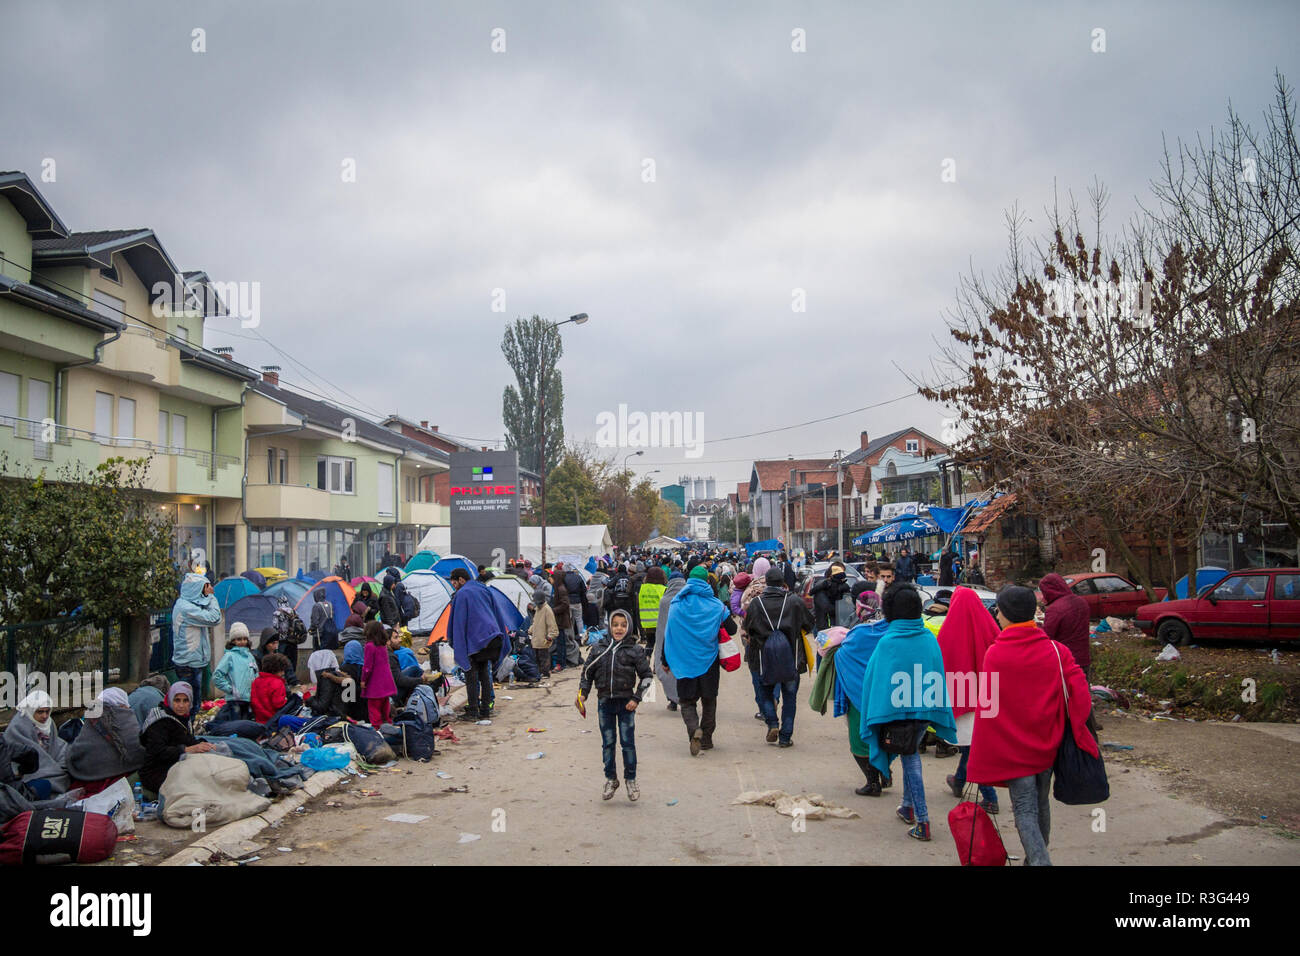 BAPSKA, Croazia - 24 ottobre 2015: folla di profughi in attesa di registrare e inserire la Serbia al confine con la Macedonia sulla rotta dei Balcani, durante Refu Foto Stock